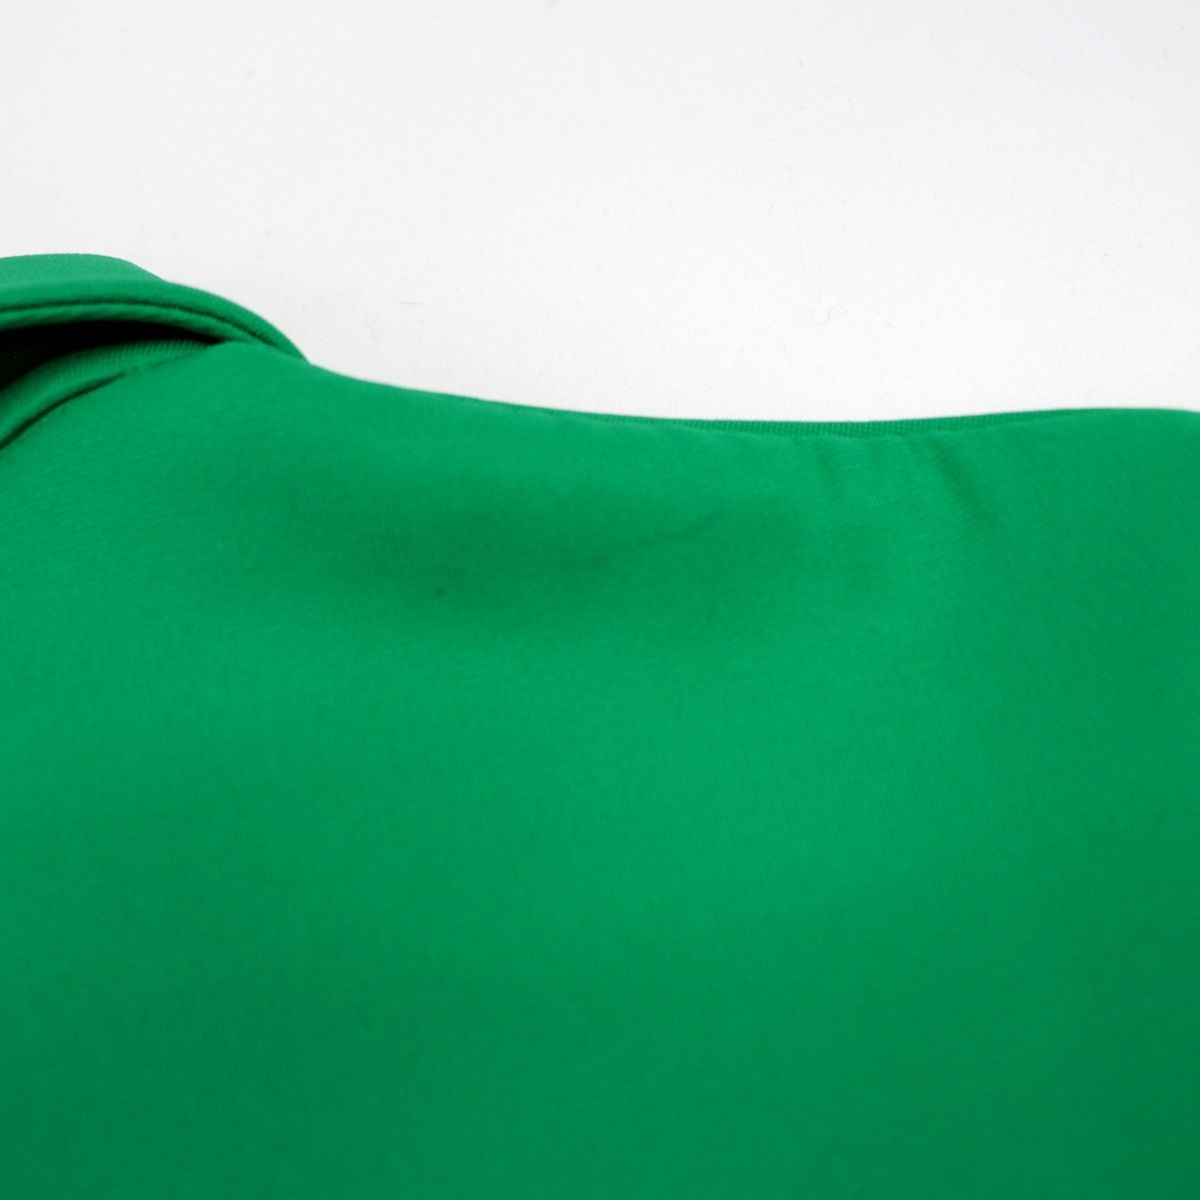 美品 プラダ ラバーロゴポロシャツ レディース 緑 白 ネイビー 42 ハーフジップ ボンディング PRADA